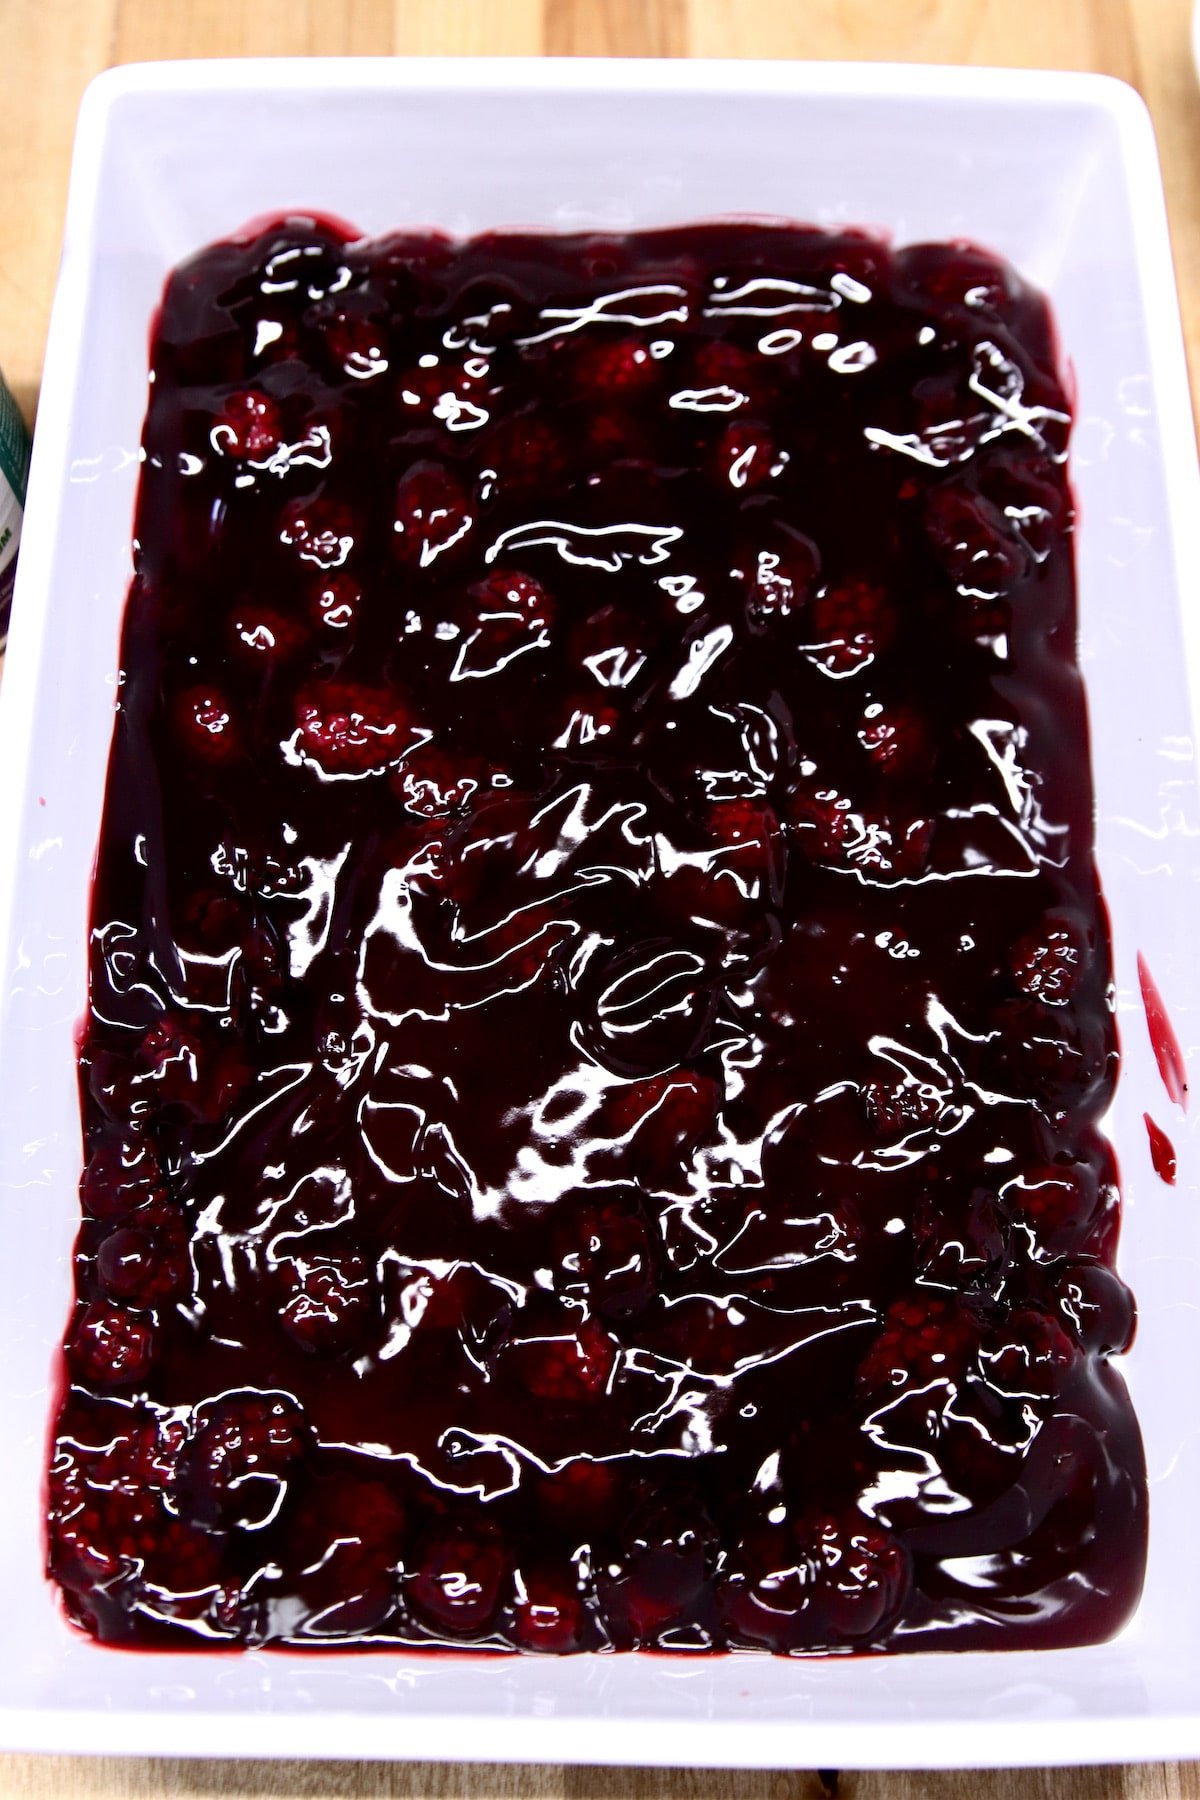 blackberry pie filling in a cake pan.